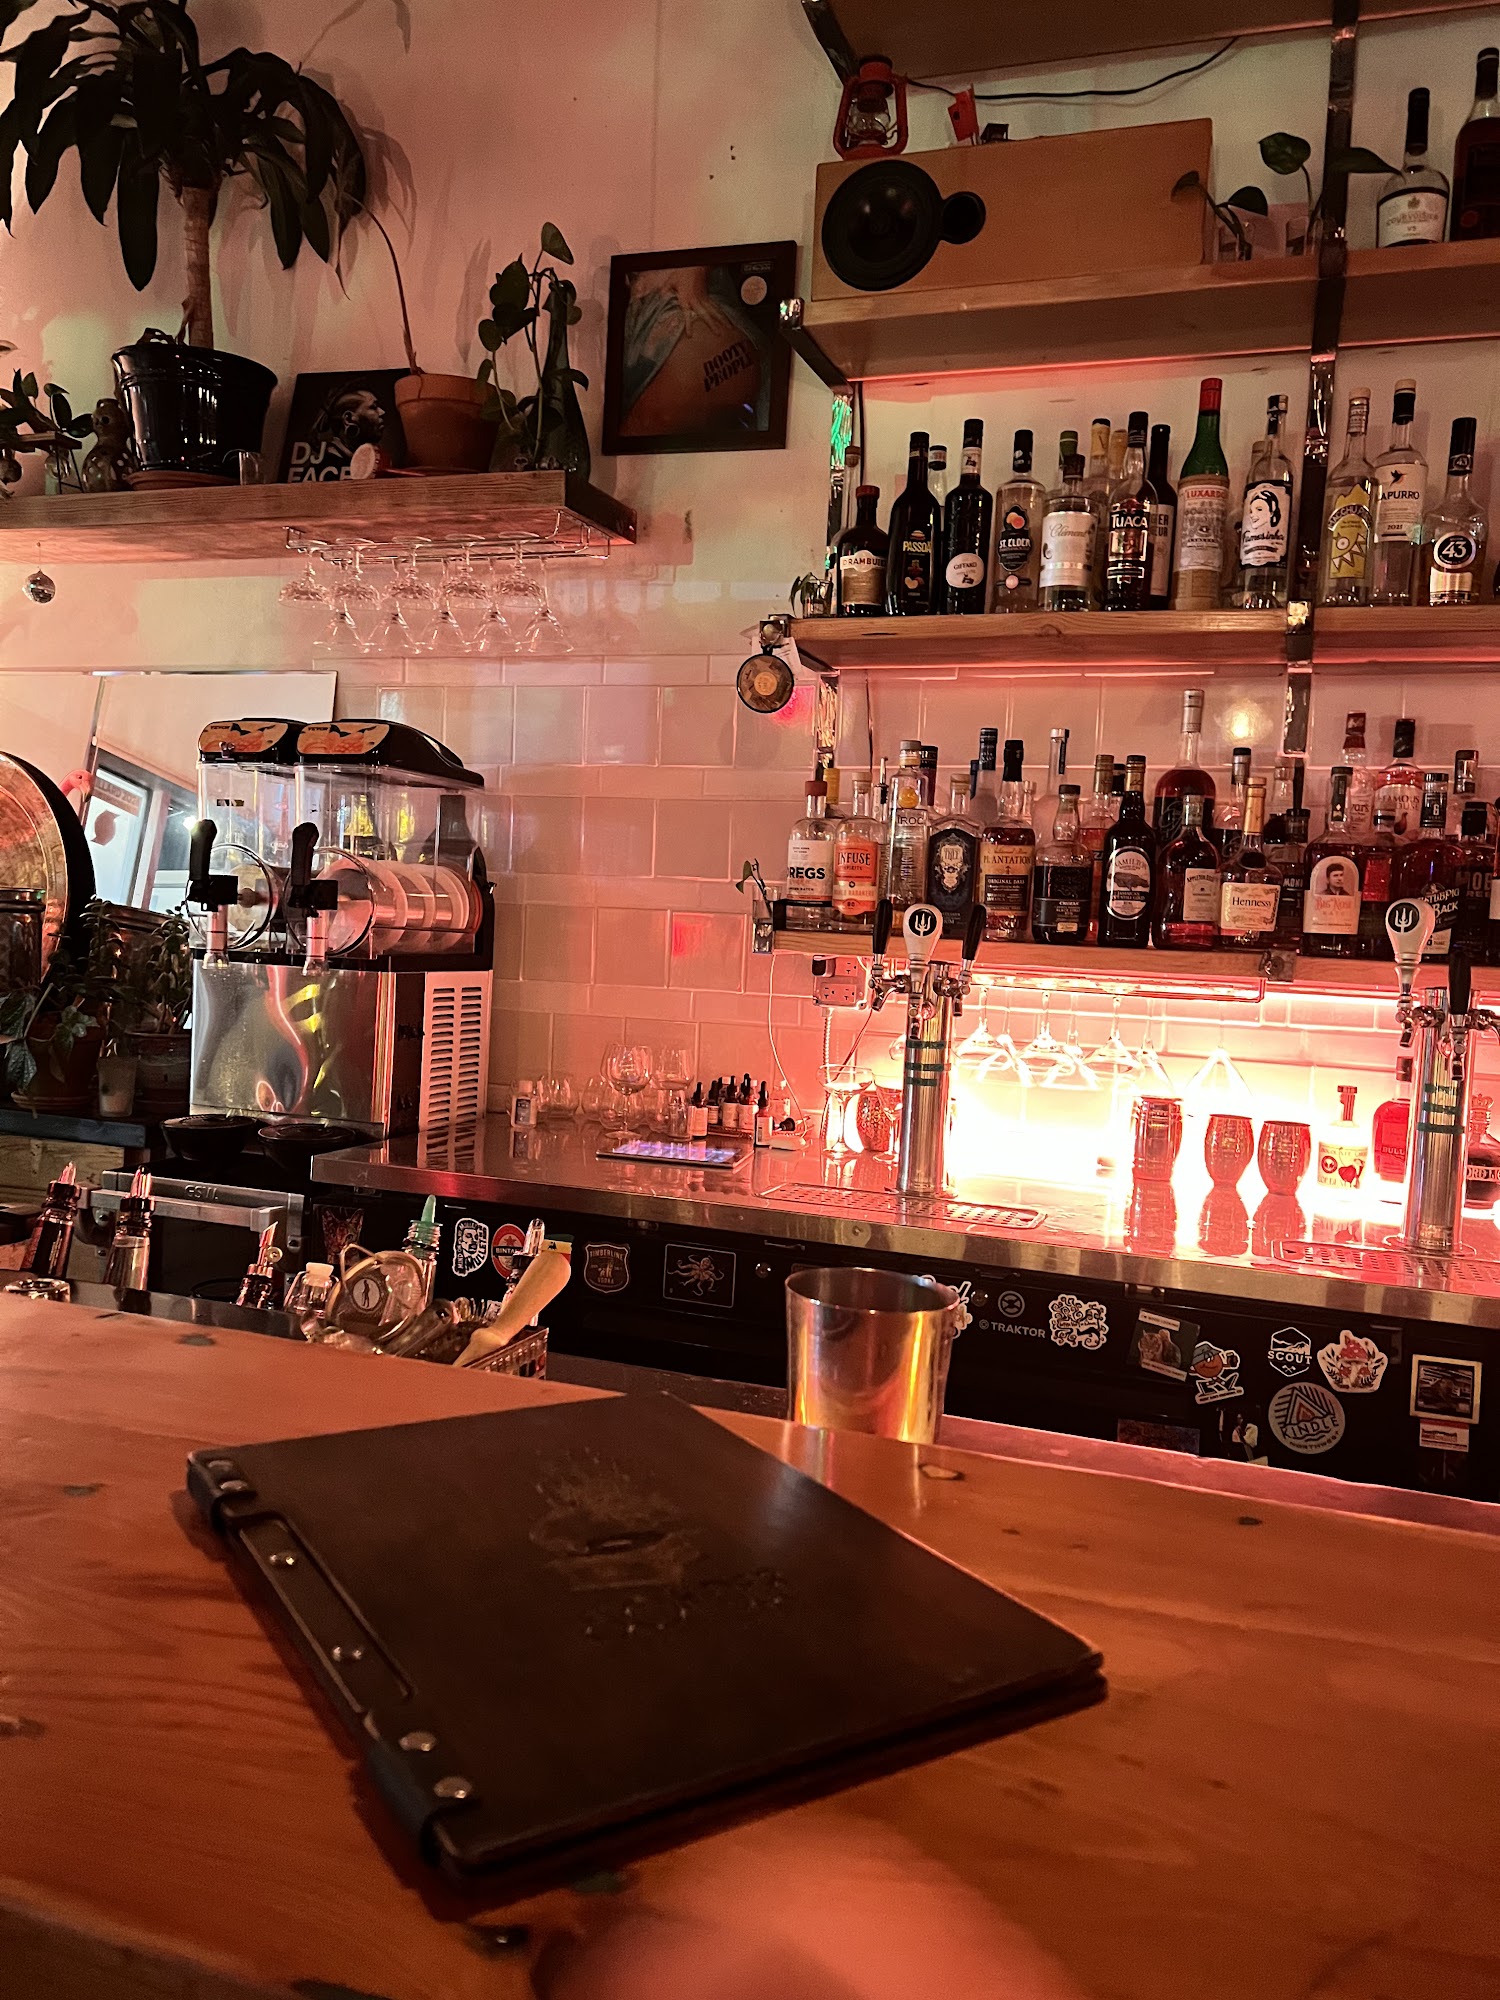 The Sonder Bar